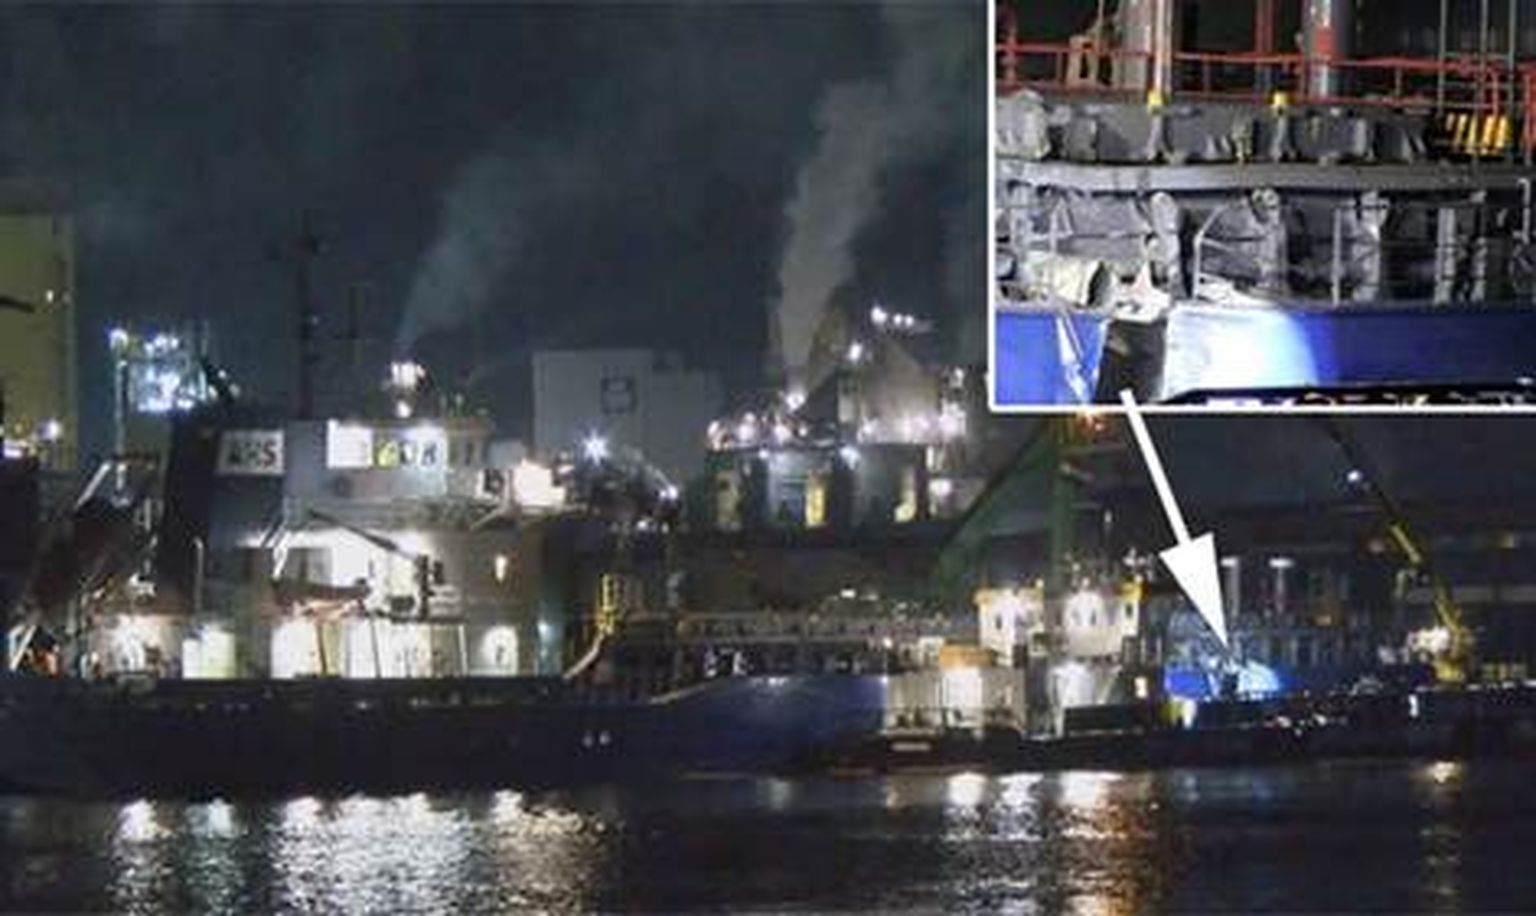 Перевозившее груз эстонской компании судно попало в аварию, страховое возмещение составило 0,8 миллиона евро.